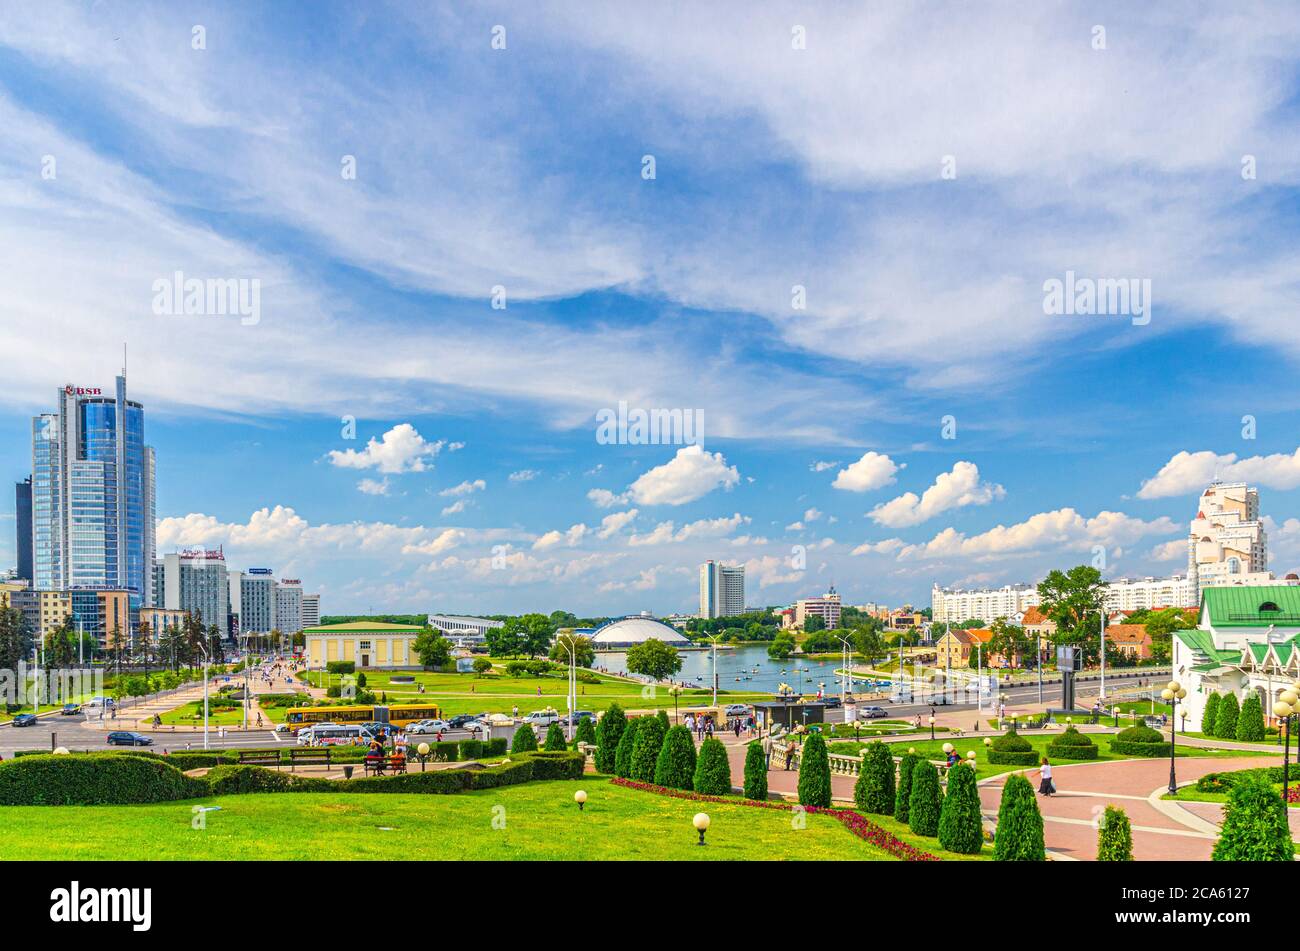 Minsk, Bielorussia, 26 luglio 2020: Paesaggio urbano della città di Minsk con grattacieli sul viale Pobediteley Peramohi nel distretto di Nemiga vicino al argine del fiume Svislach, nuvole bianche del cielo blu nella soleggiata giornata estiva Foto Stock